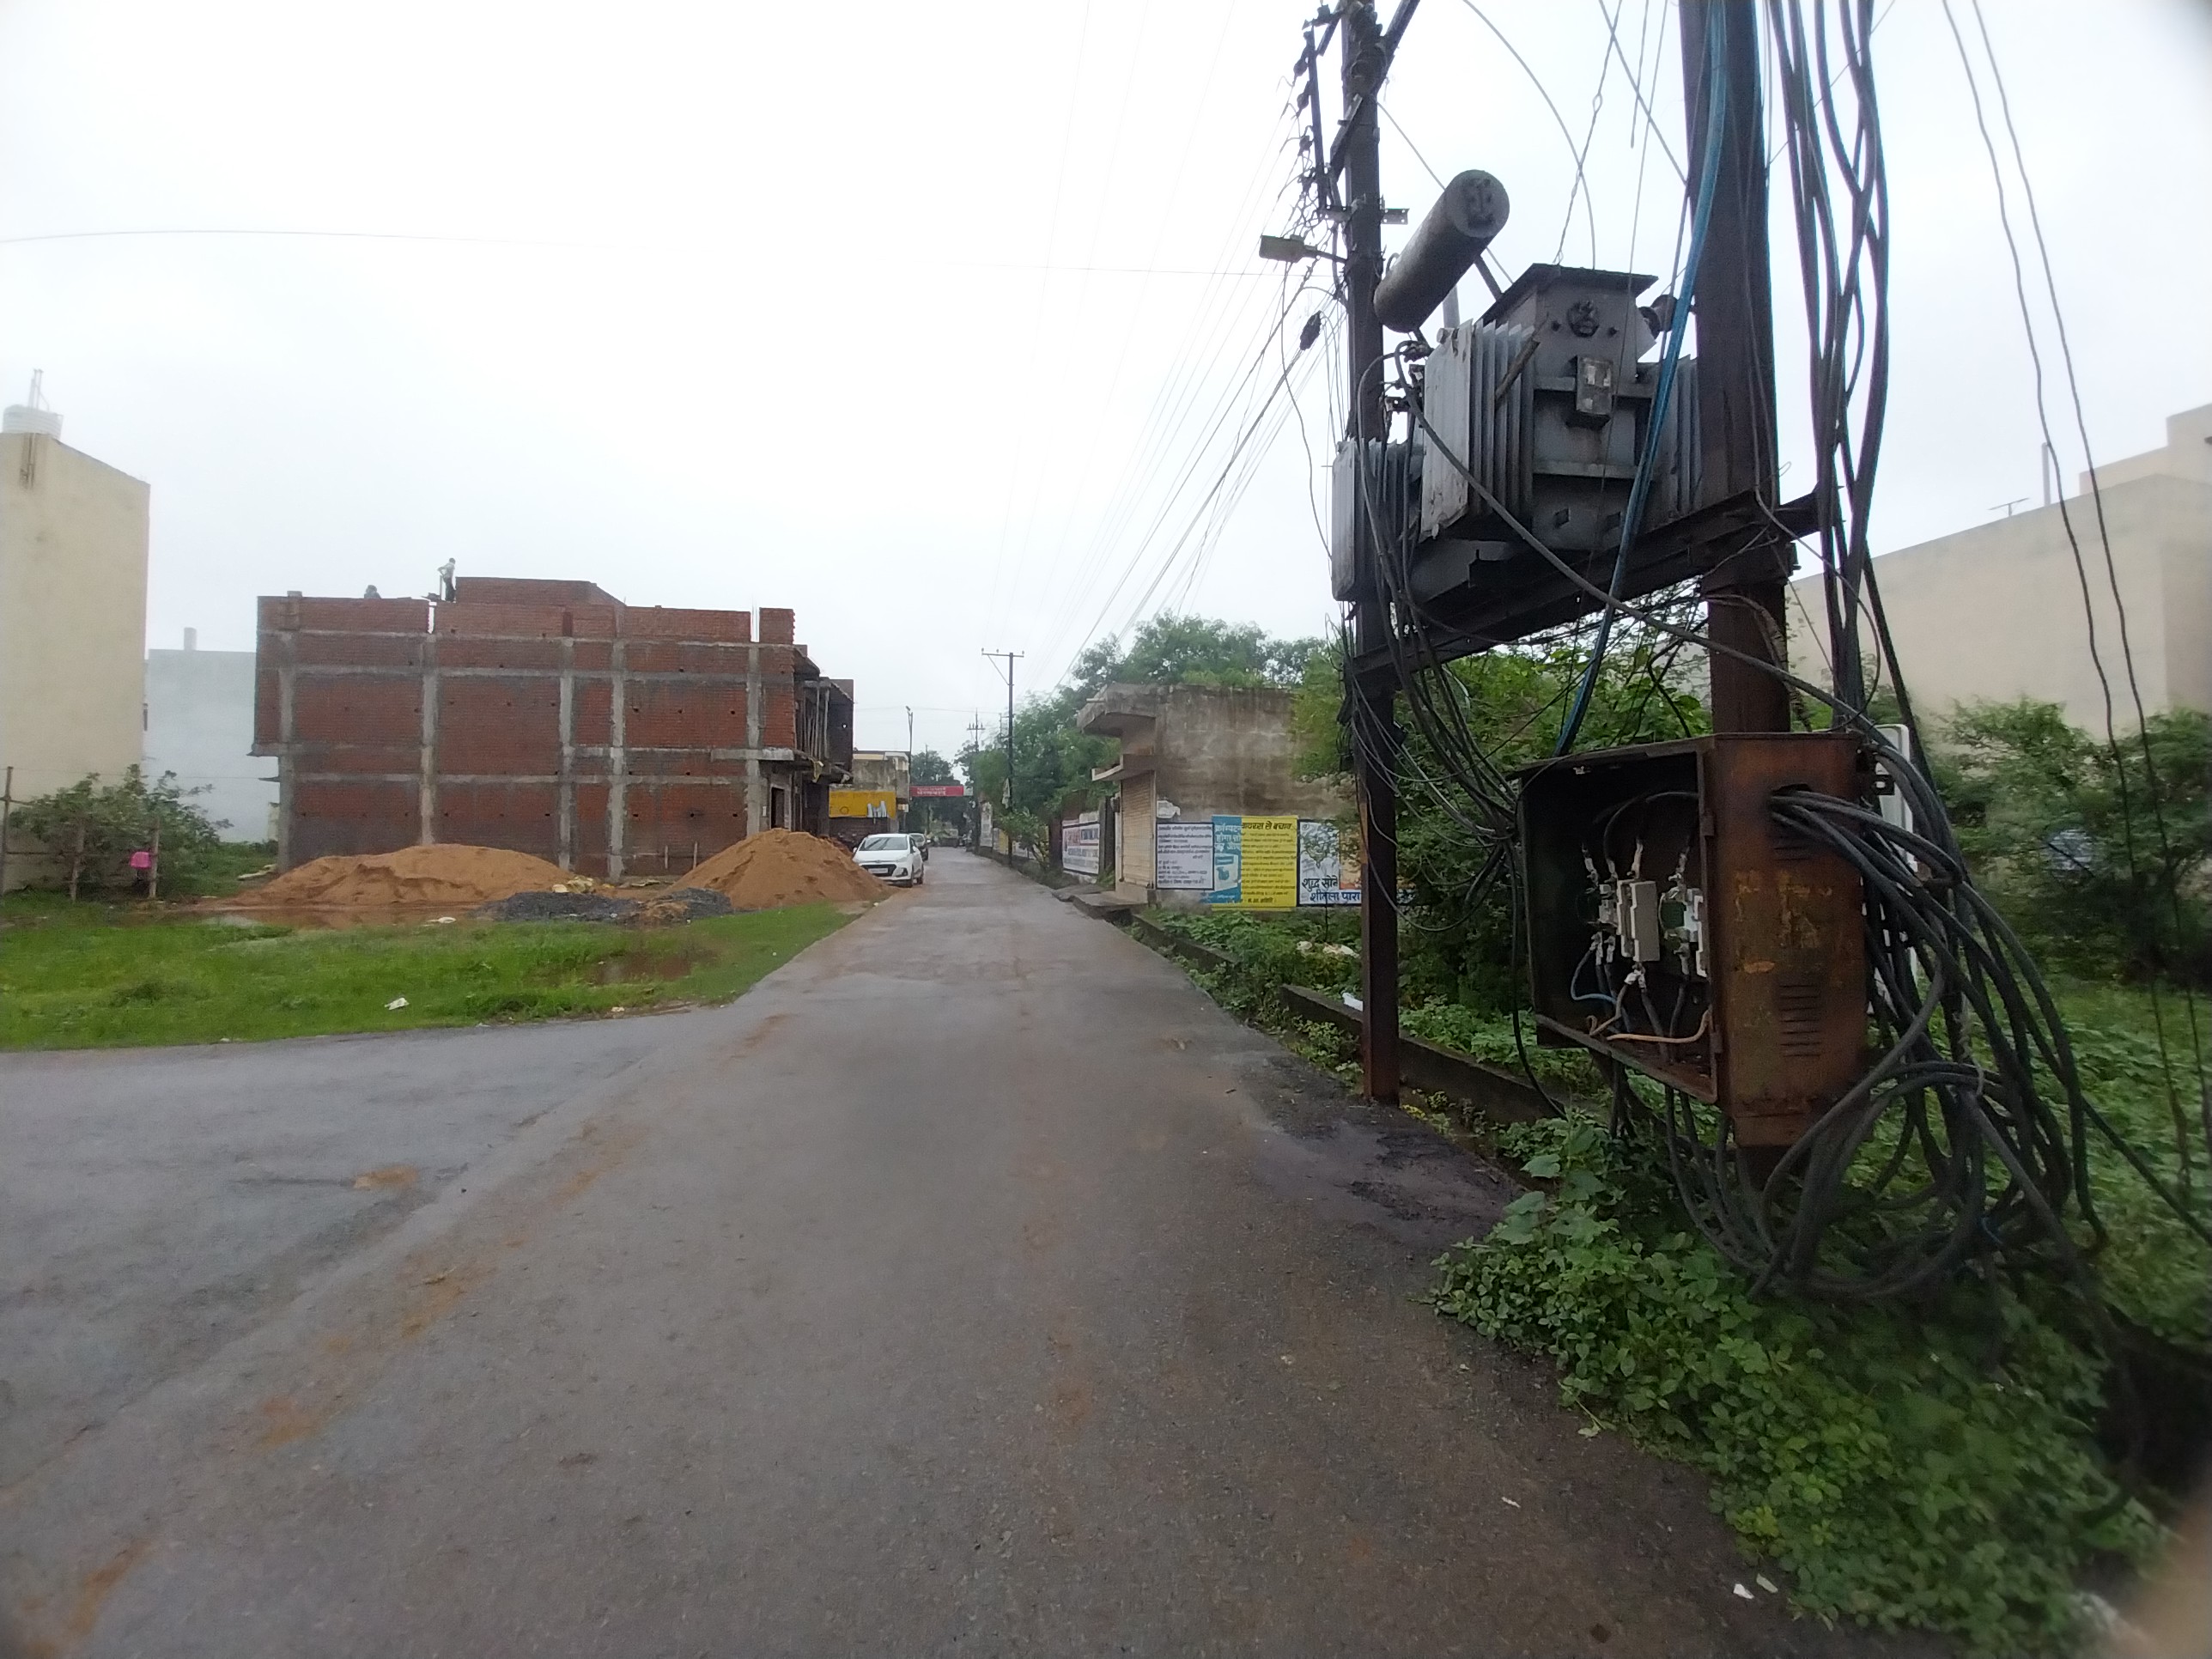 Chhattisgarh News : खुले में ट्रांसफार्मर कंरट का डर,बारिश में कही धोखा ना हो
जाए, देखें फोटोज